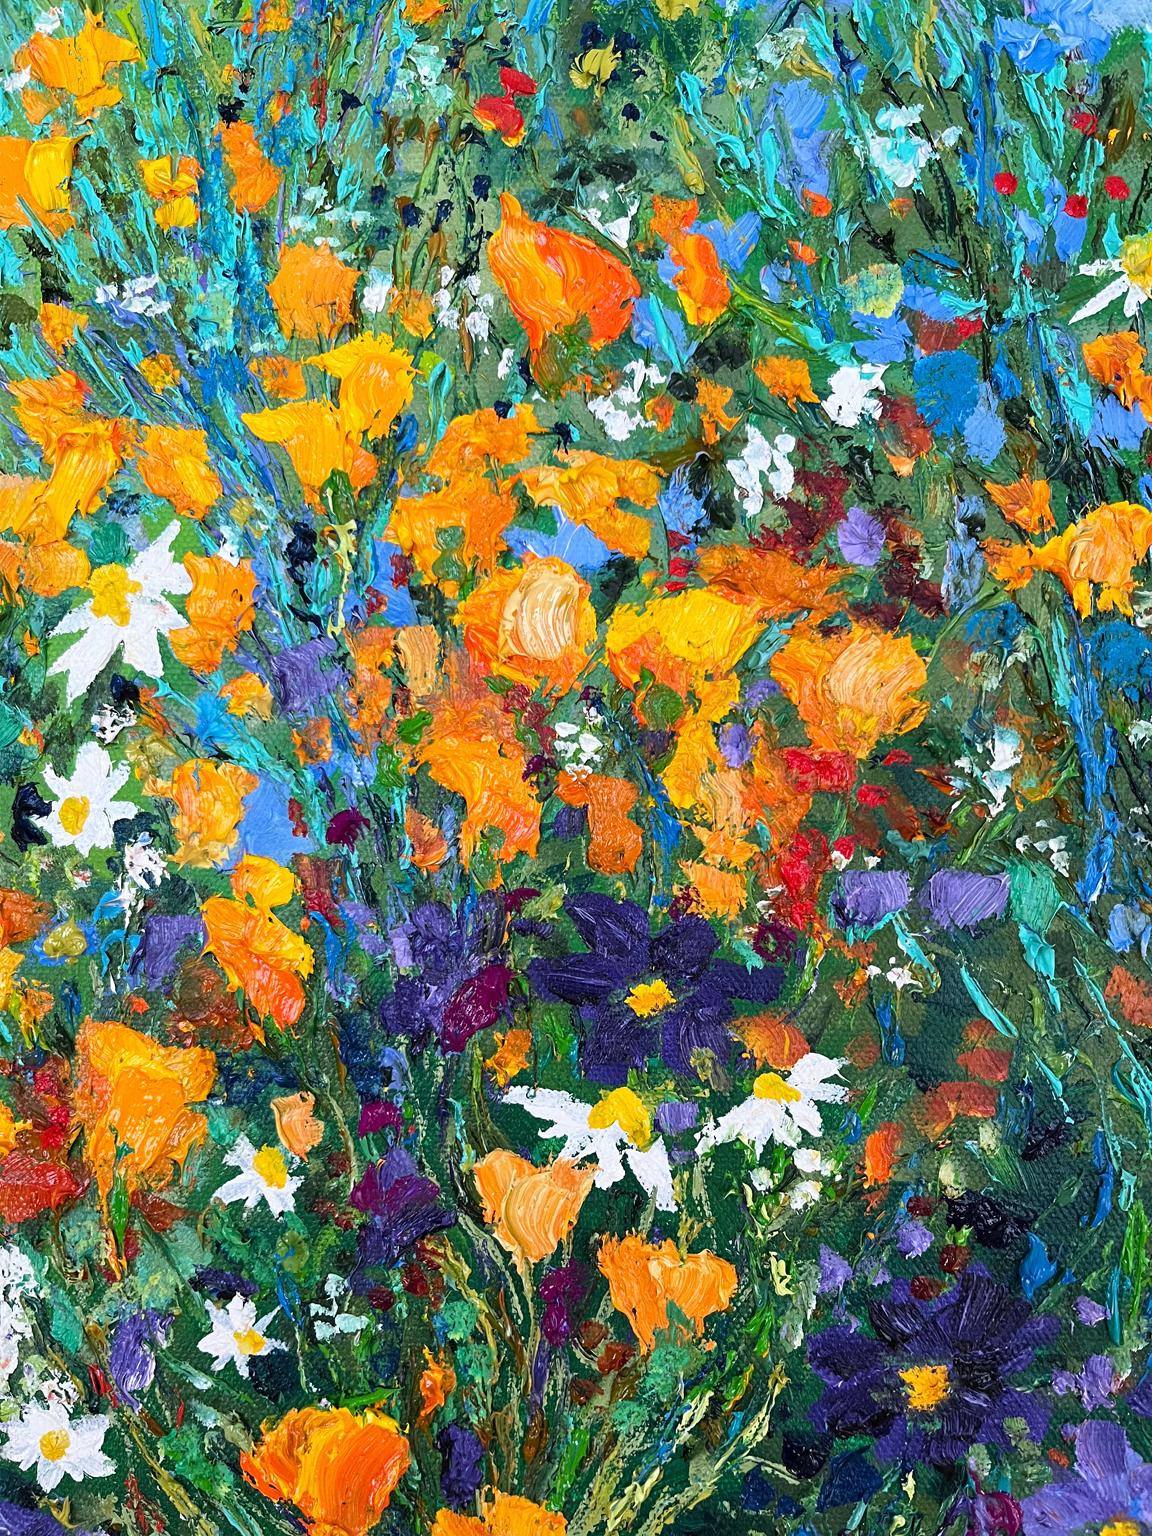 <p>Commentaires de l'artiste<br>Dans un jardin tranquille, des fleurs sauvages rêvent et créent leur propre soleil. Les fleurs bleues et or dominent la grappe, tandis que les fleurs rouges ajoutent des accents vibrants. Imprégnées d'une touche